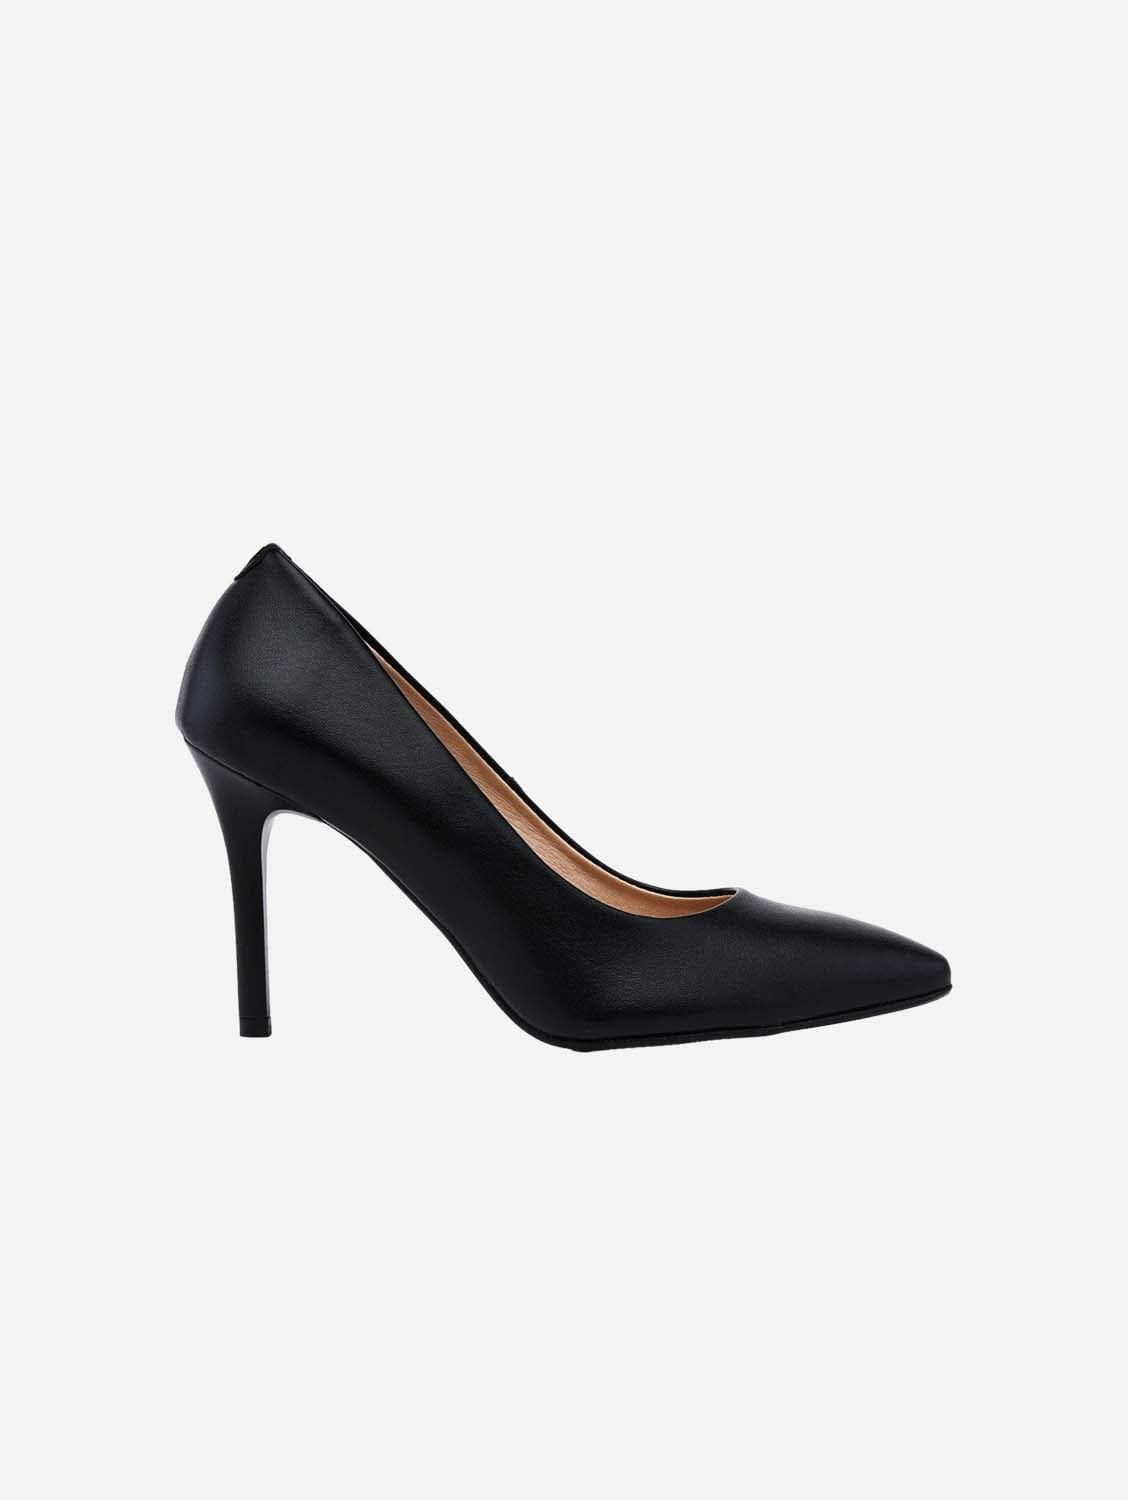 Empress of Heels Black Beauty - vegan 95mm heels 36EU - 3UK - 6US